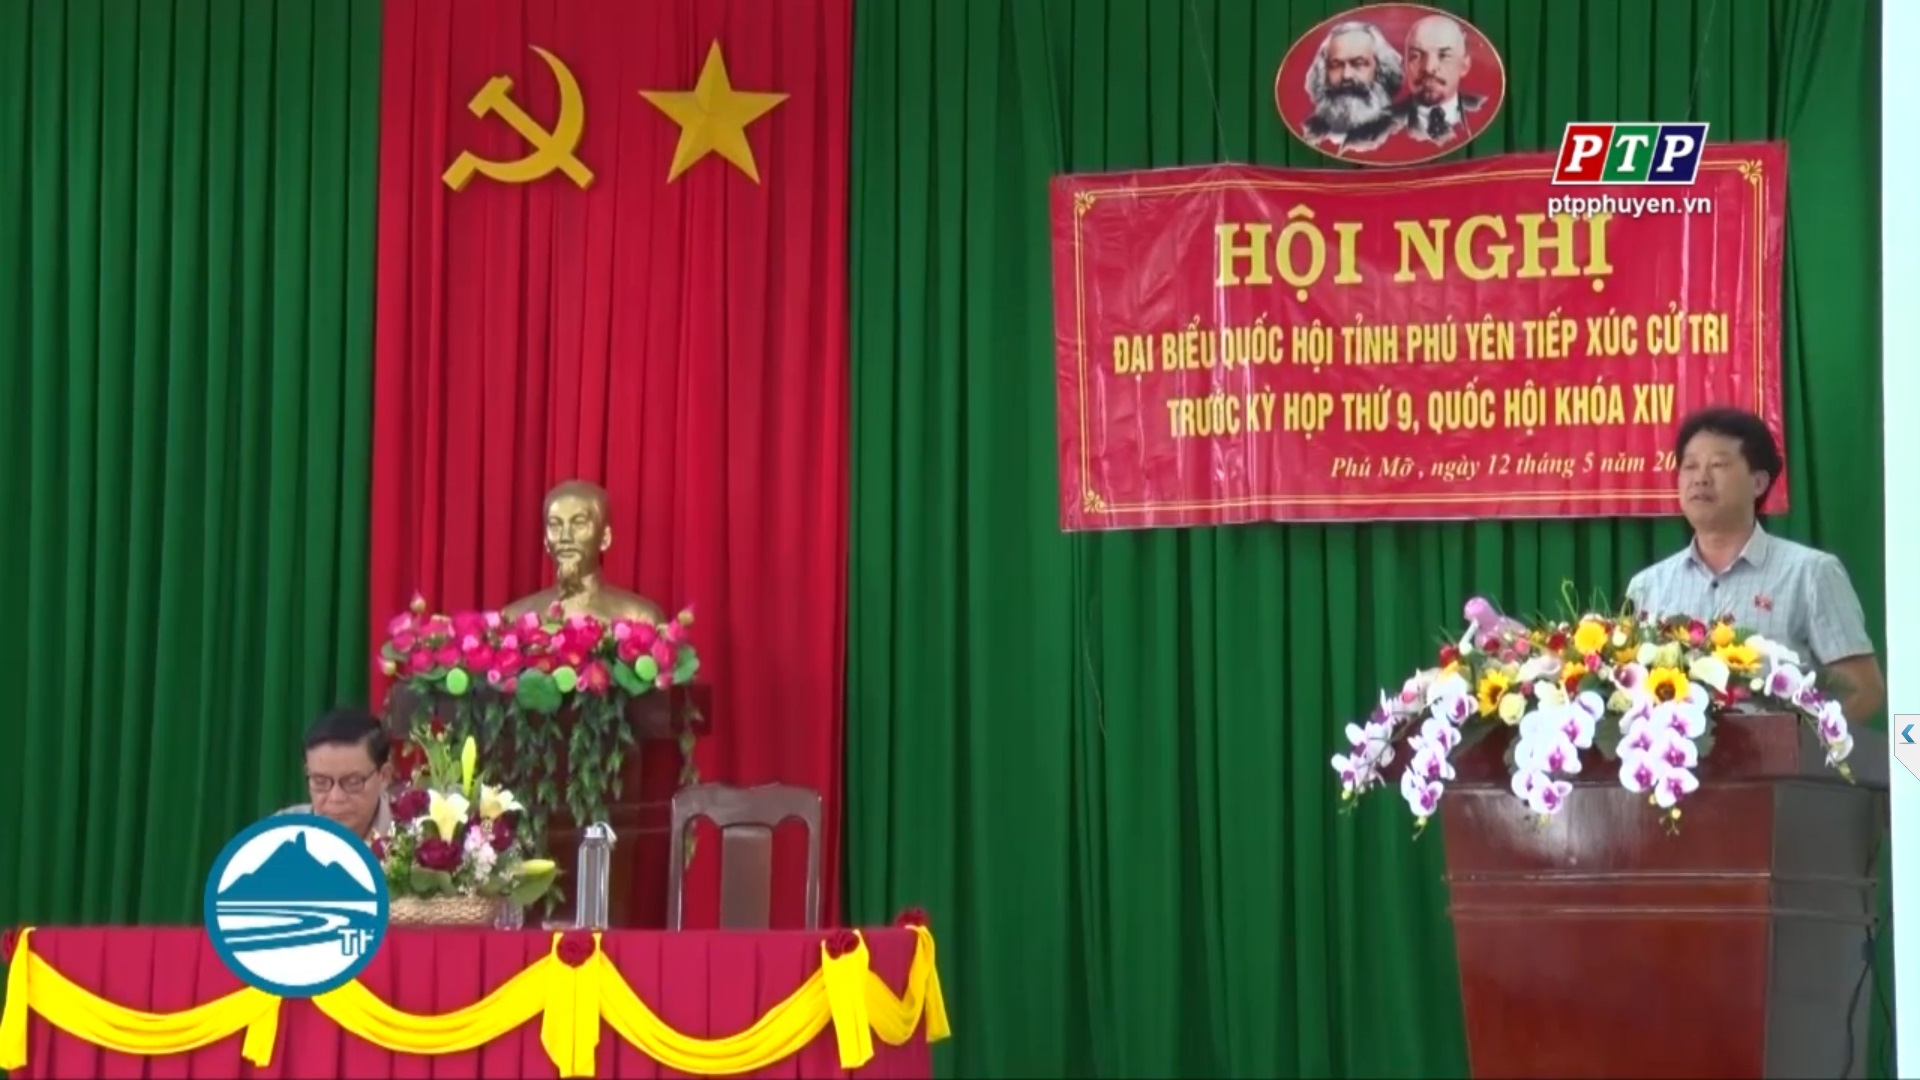 Đại biểu Quốc hội tiếp xúc cử tri Đồng Xuân trước kỳ họp thứ 9, Quốc hội khóa XIV